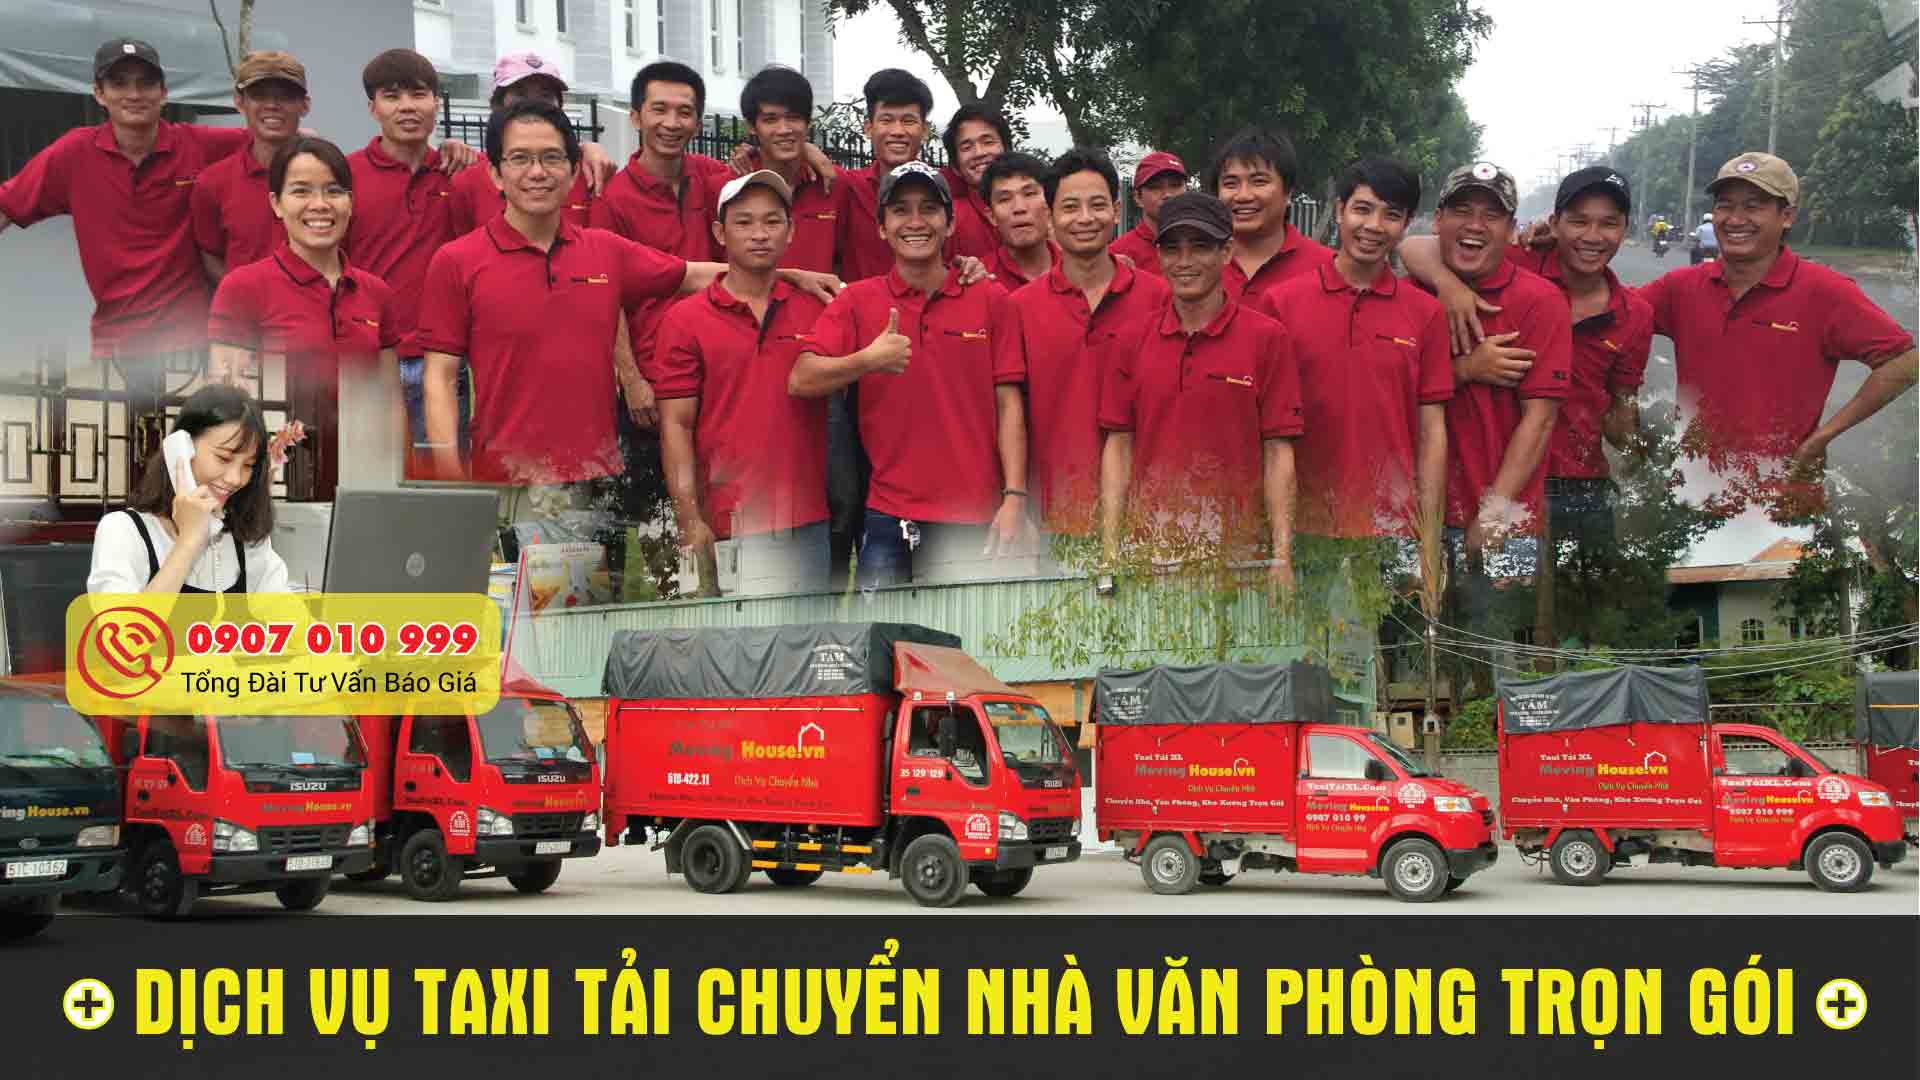 Taxi tải Xá Lợi - Đơn vị cung cấp dịch vụ taxi tải ở TP. HCM